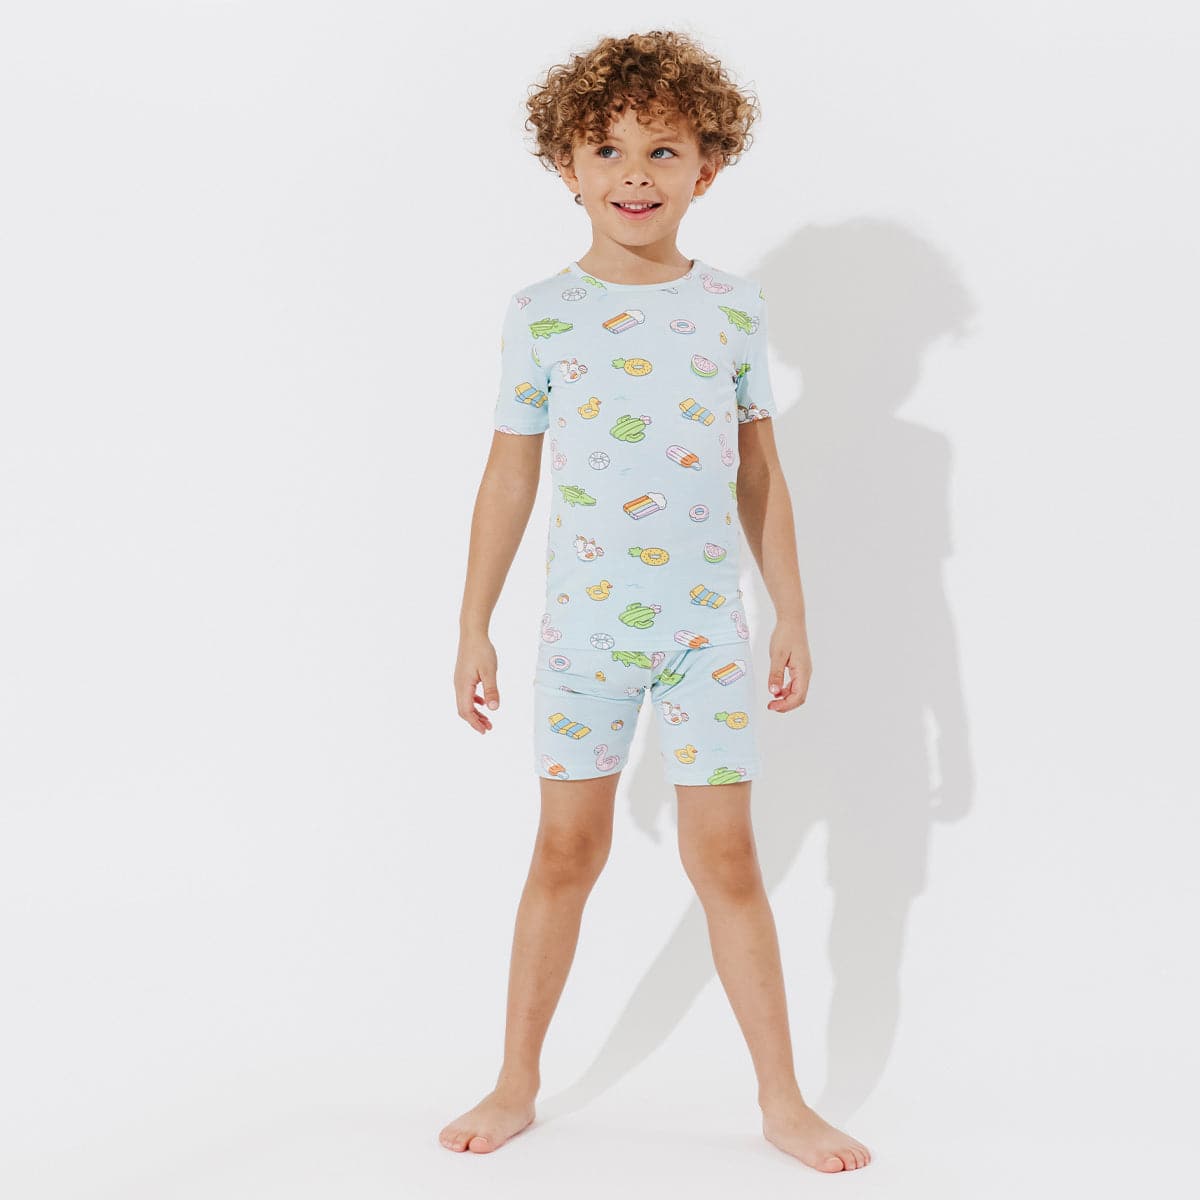 Sweet Summer Bundle - Kids Bamboo Pajamas